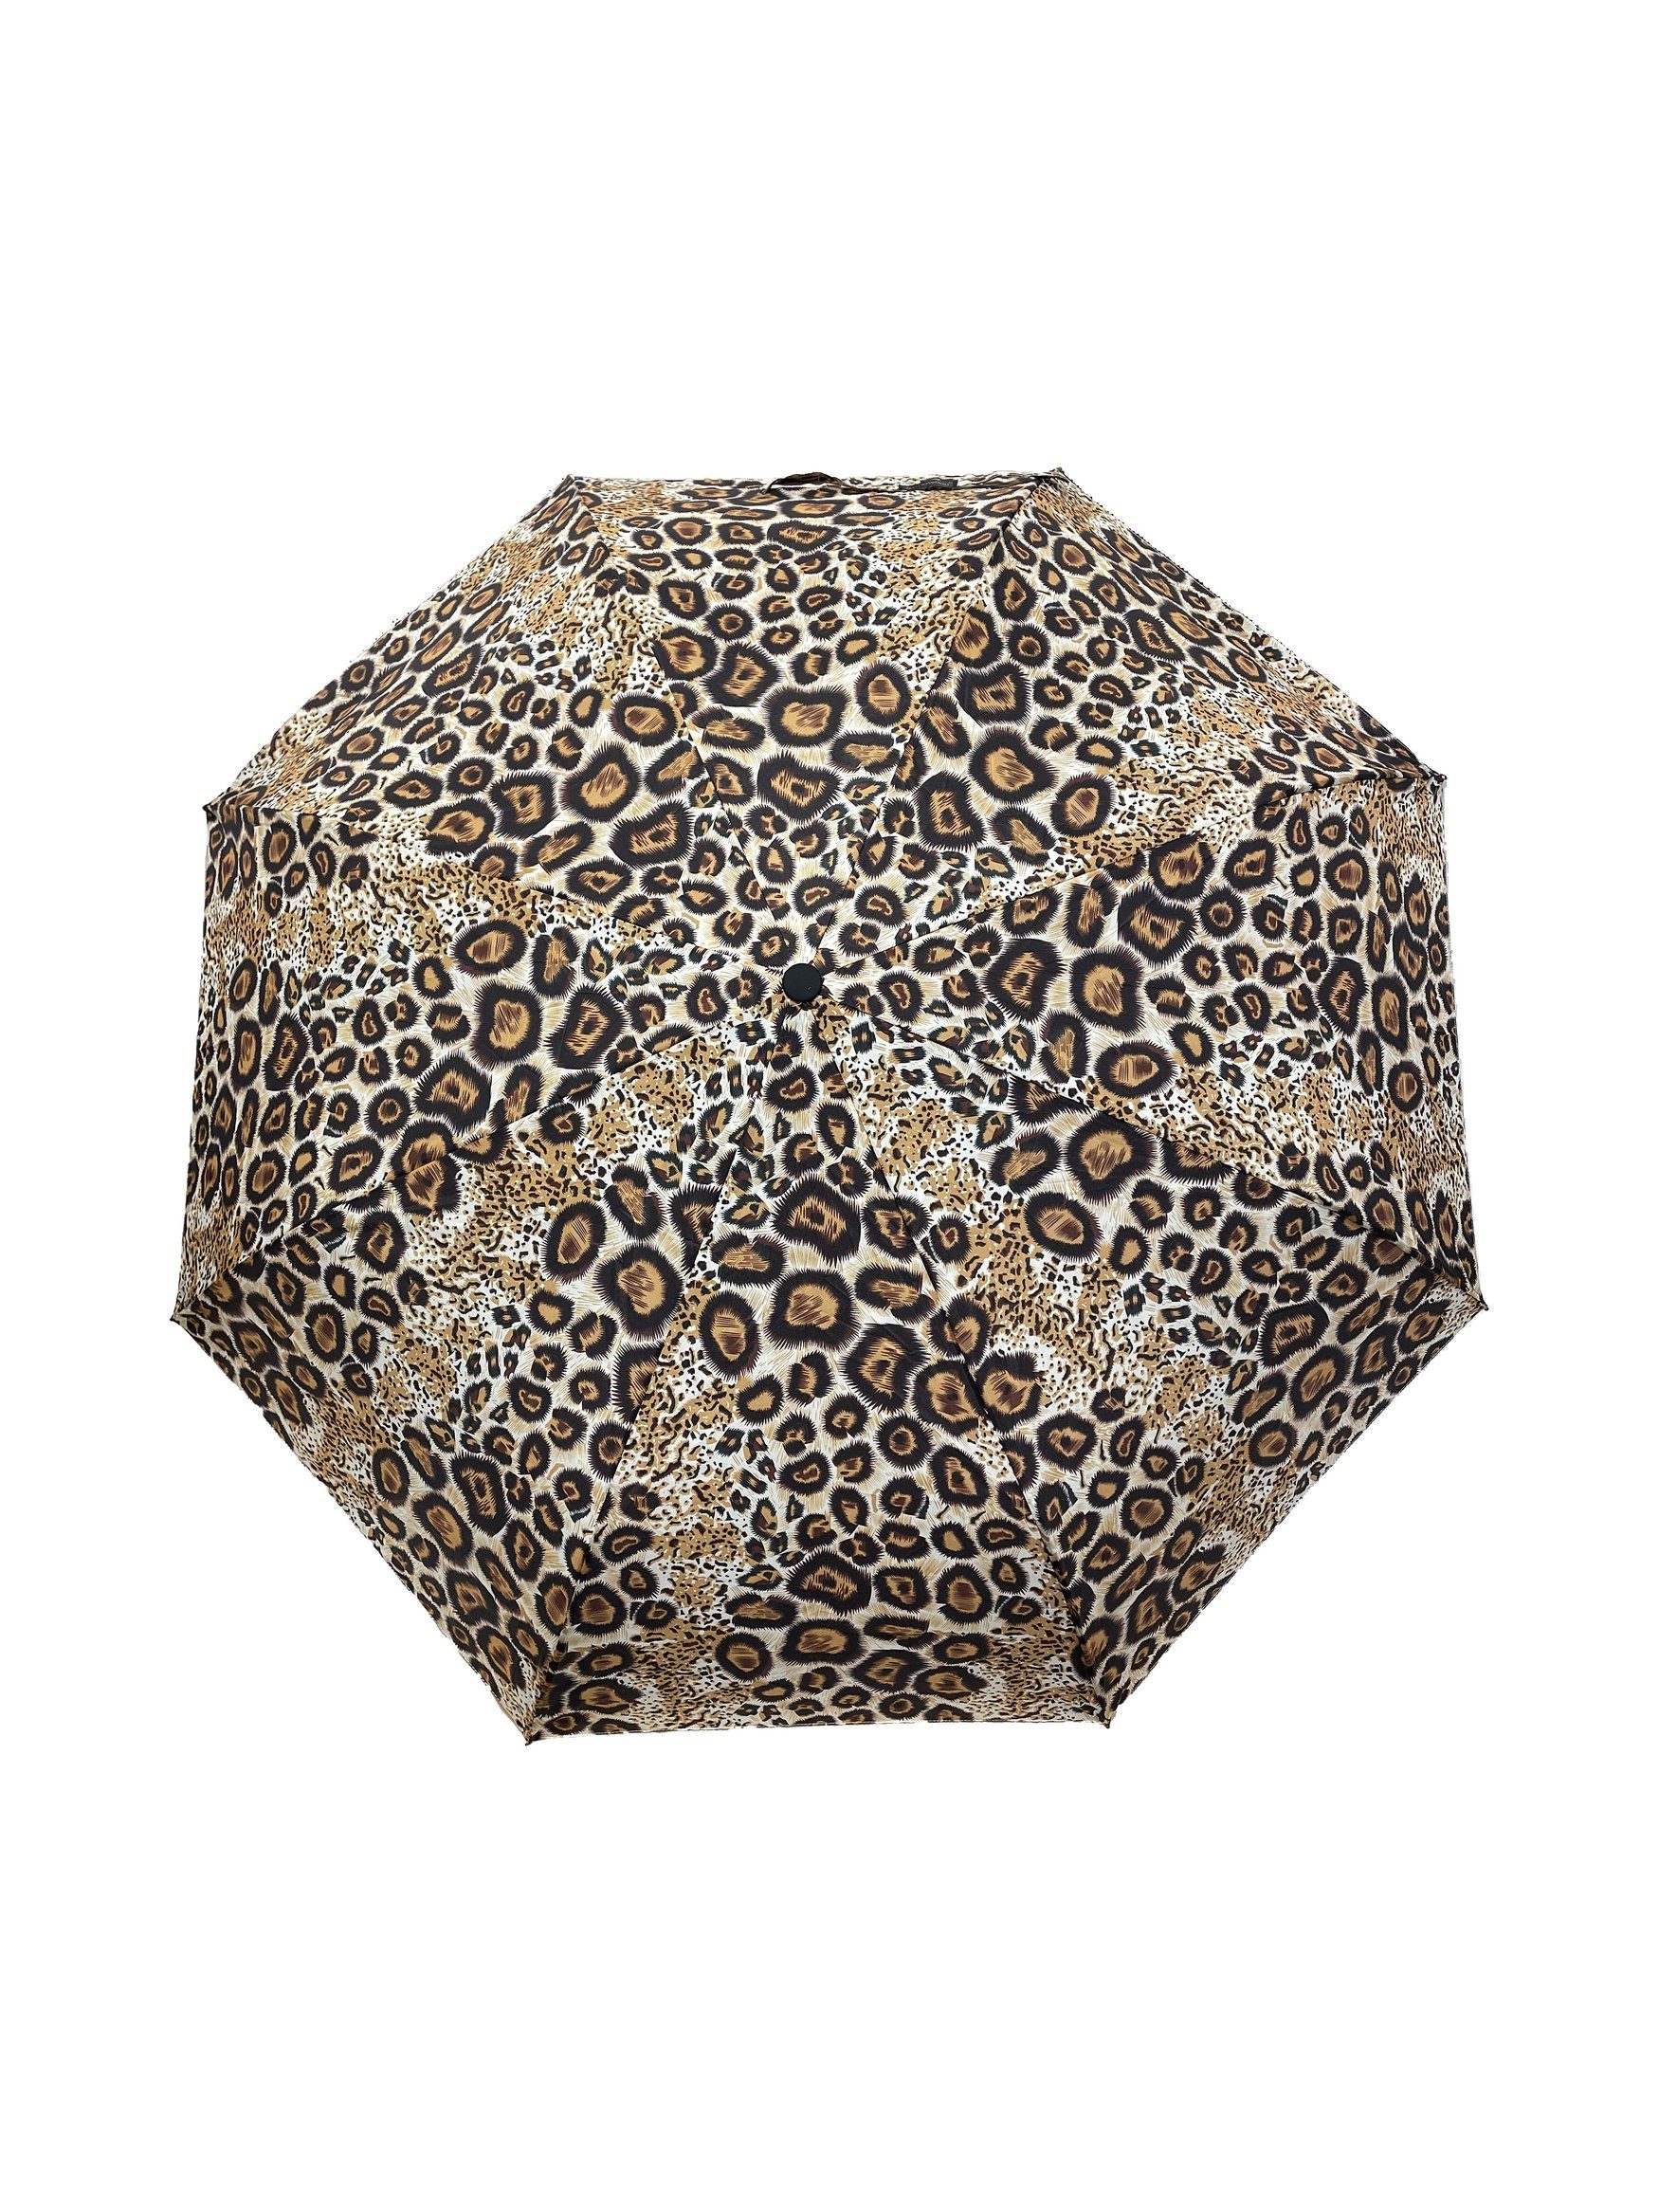 Taschenregenschirm Muster Taschenschirm, in Braun Leopard ANELY 6747 Kleiner Regenschirm Automatik